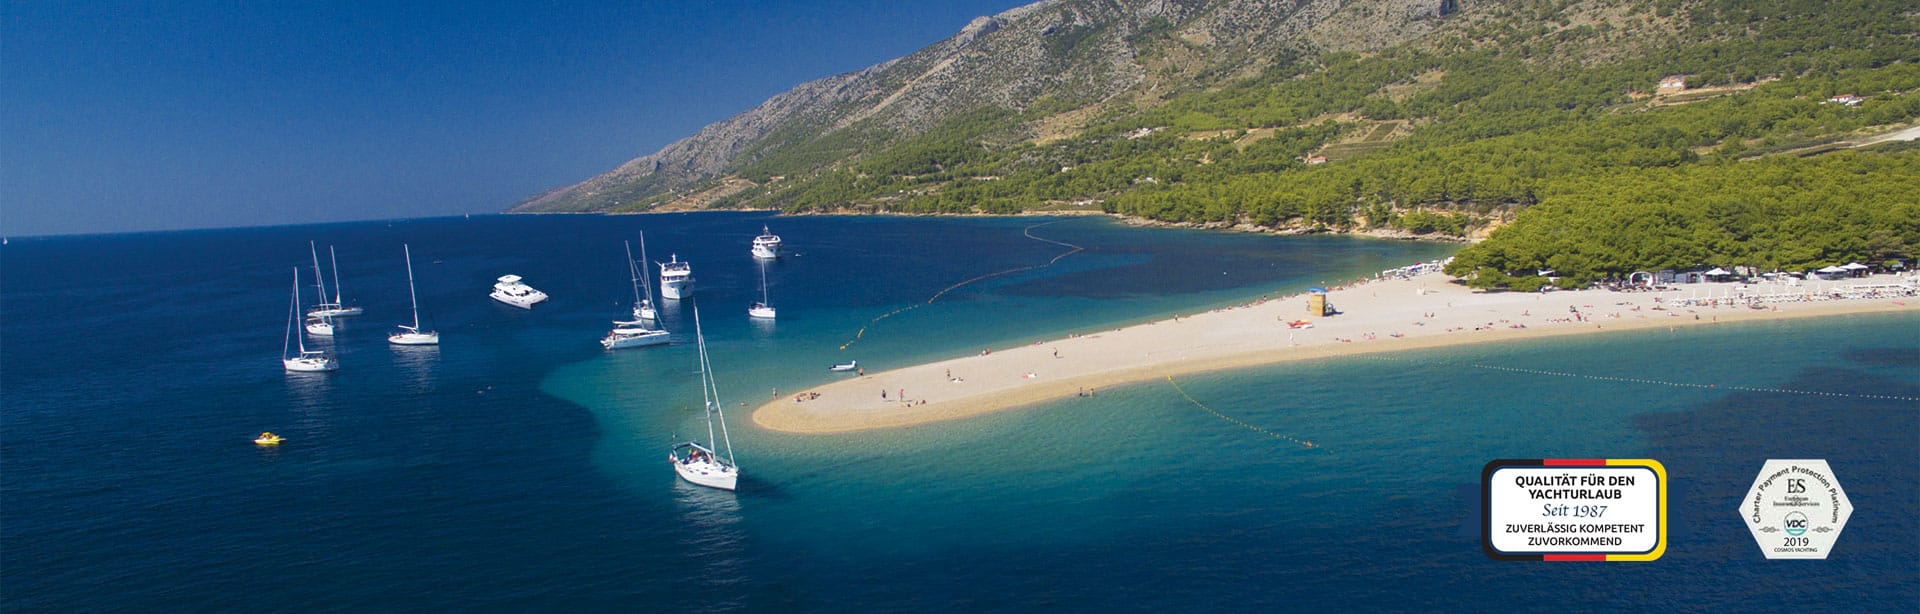 cosmos yachting kroatien